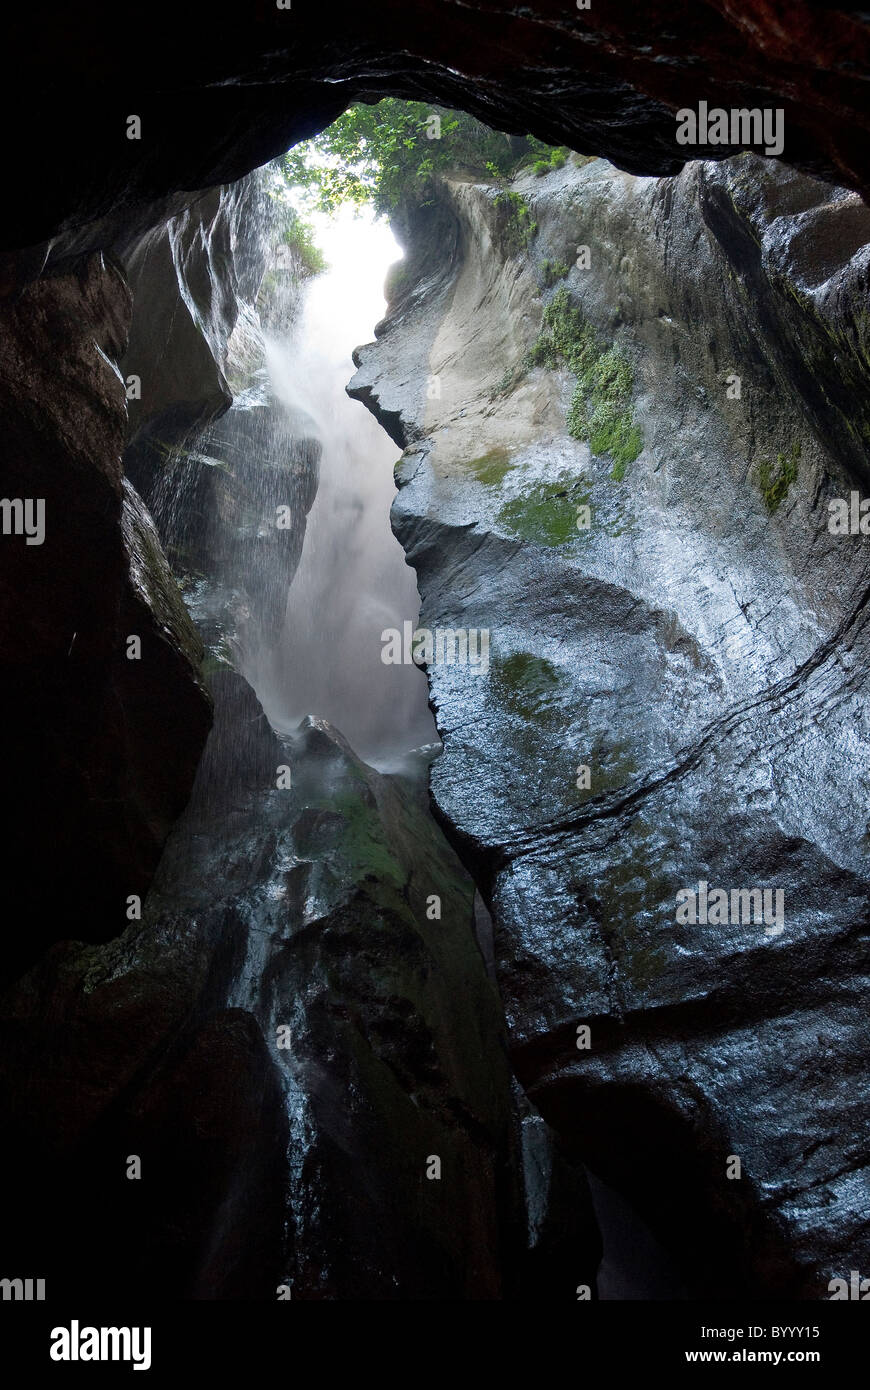 La cascada cascada Varone supr se sumerge en el Desfiladero de Varone, cerca del Lago de Garda, en el norte de Italia. Foto de stock